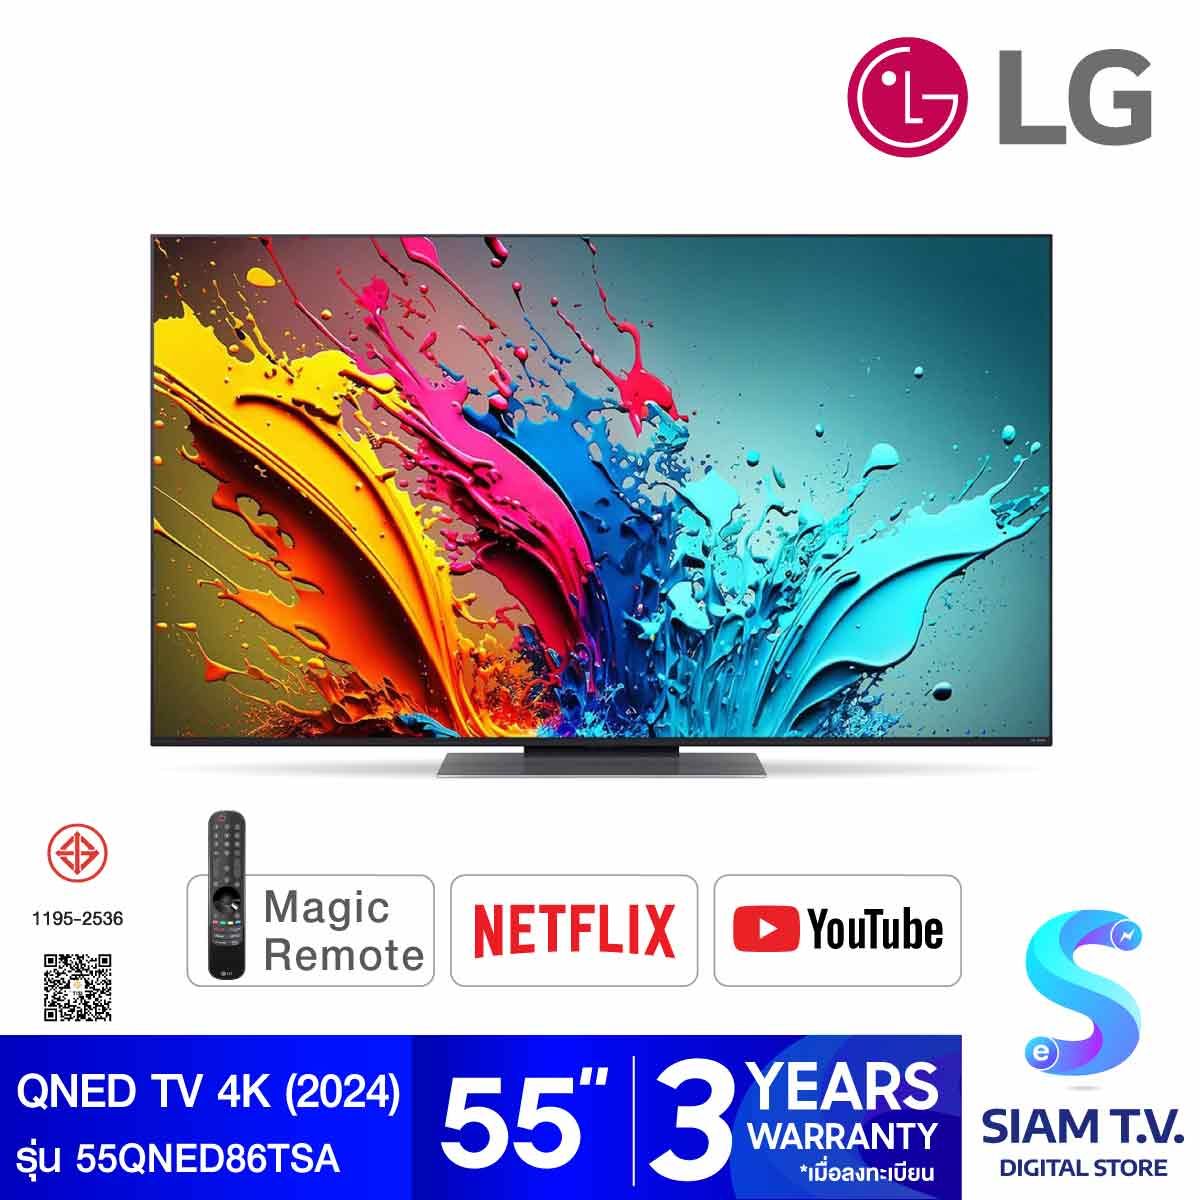 LG QNED Smart TV 4K 120Hz รุ่น 55QNED86TSA สมาร์ททีวีขนาด 55 นิ้ว